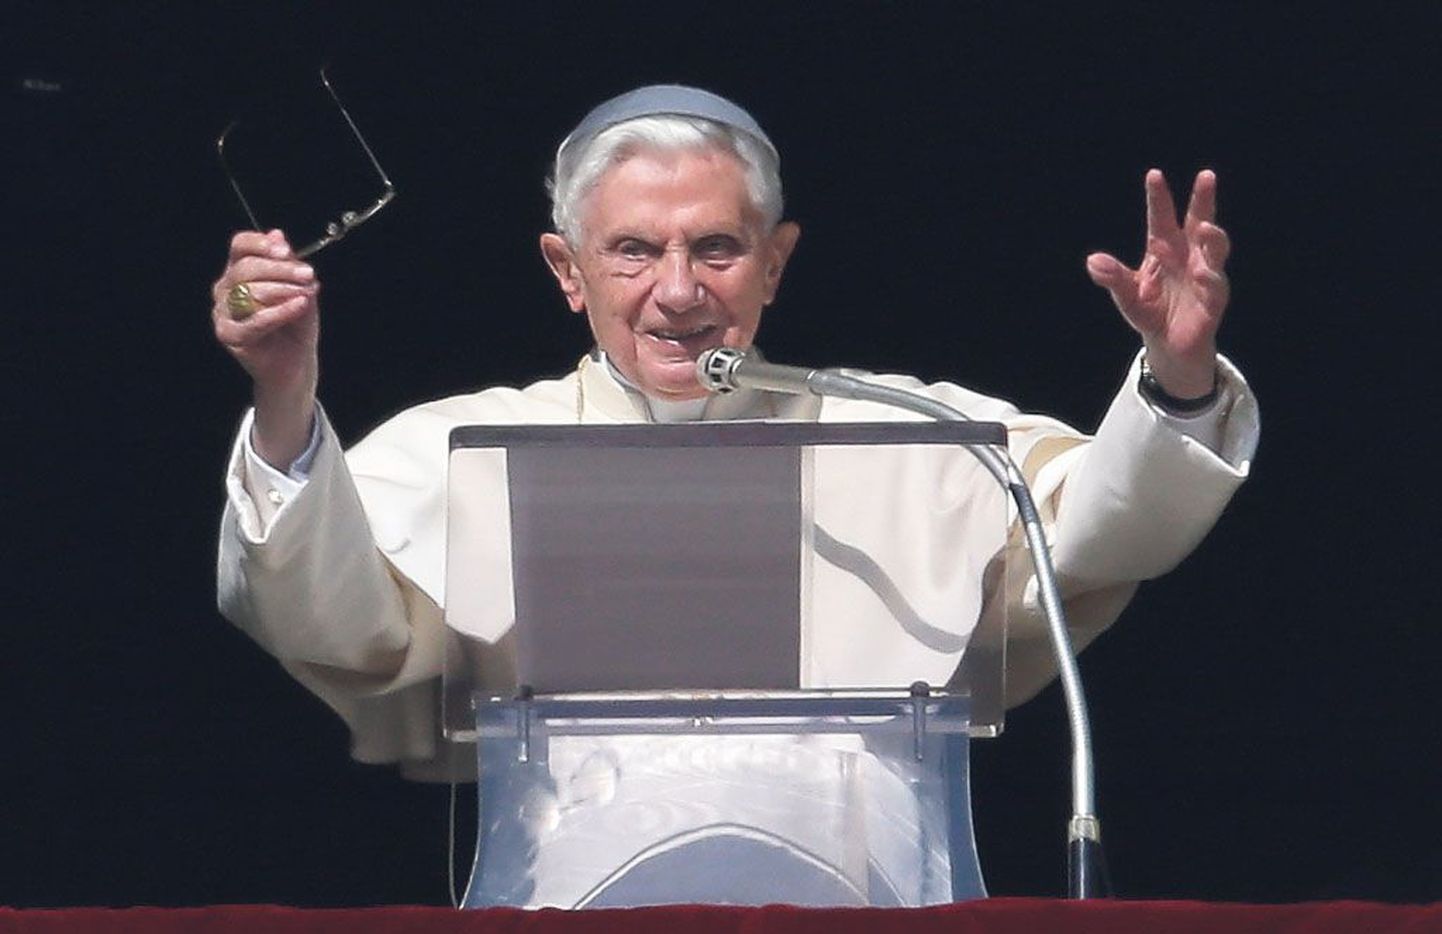 Otsusega ametist tagasi astuda on paavst Benedictus XVI loonud pretsedendi. Joseph Ratzinger tahab veeta eluõhtu kloostrirahus palvetades.